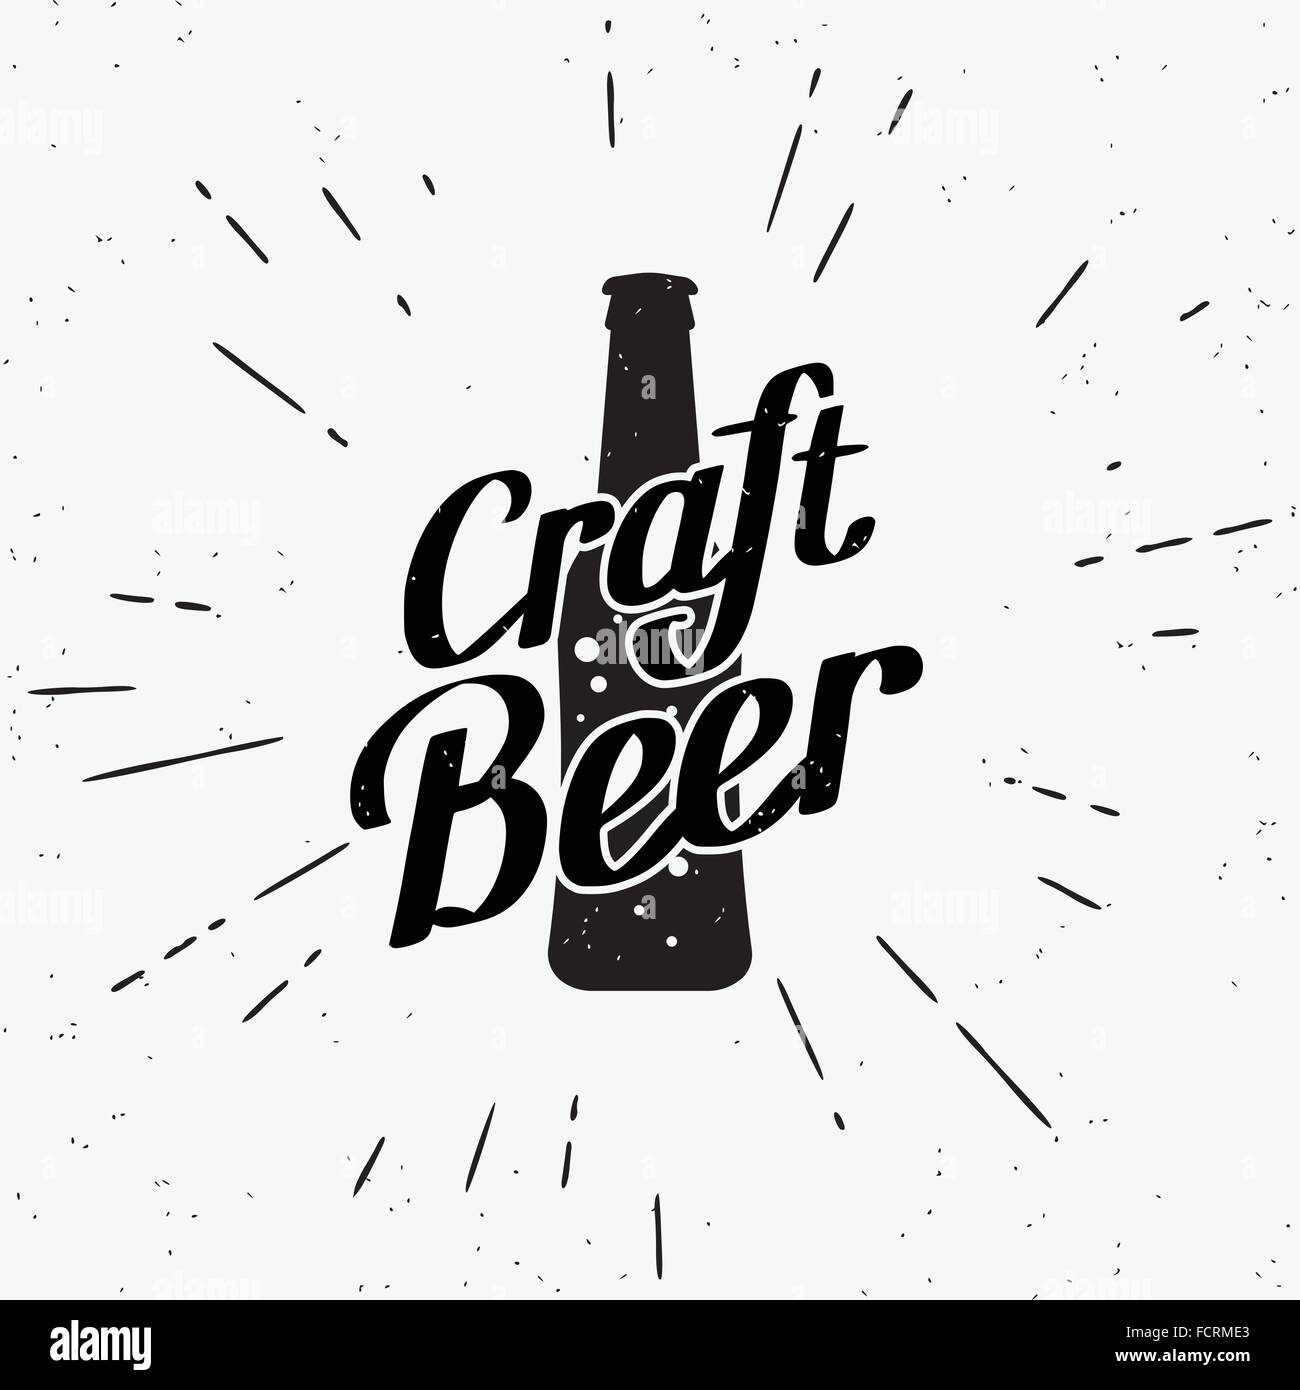 Craft beer black label Stock Vector